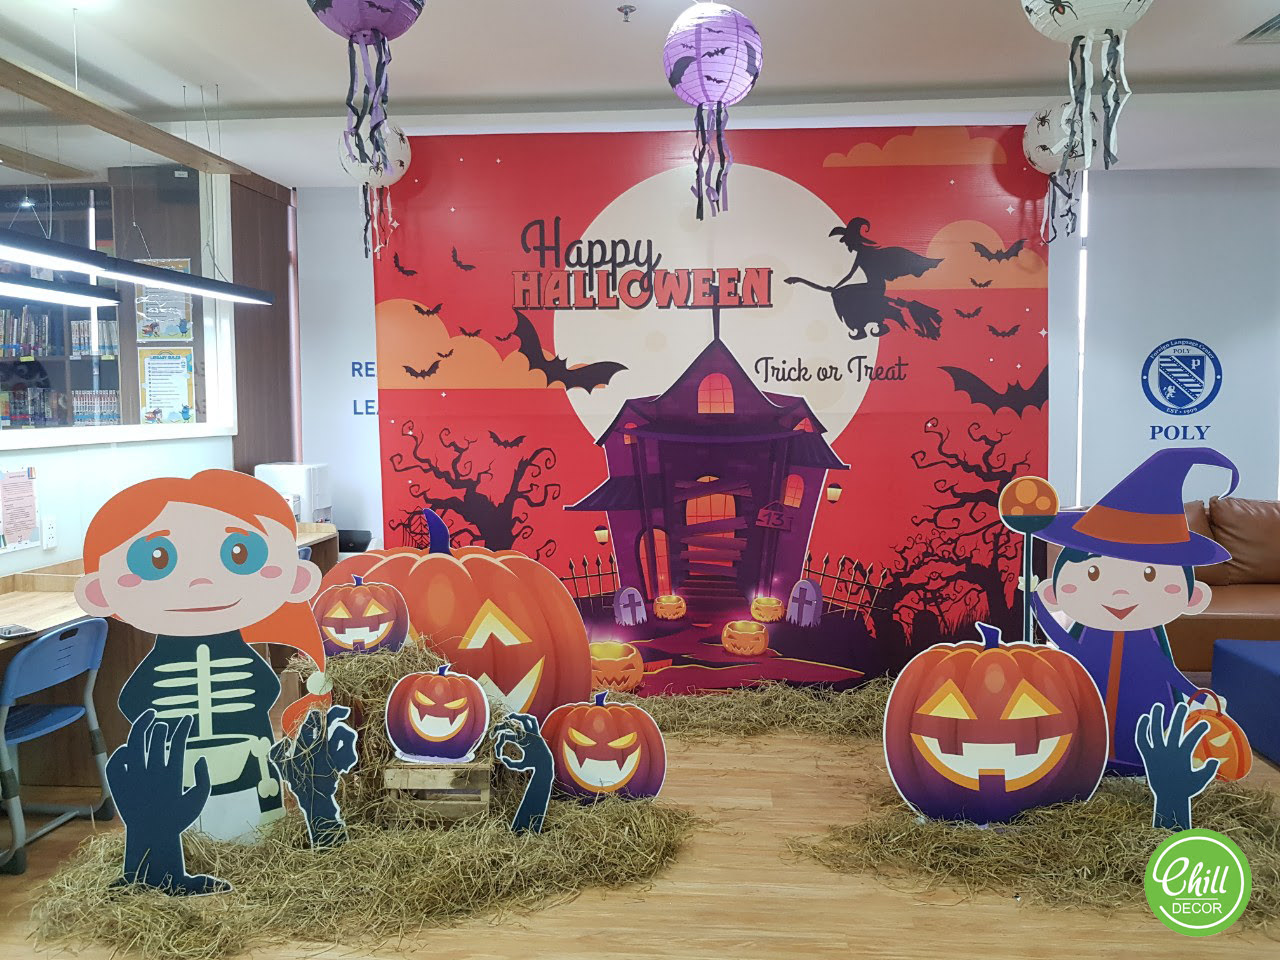 Dịch vụ trang trí Halloween chuyên nghiệp tại Hà Nội - Chill decor